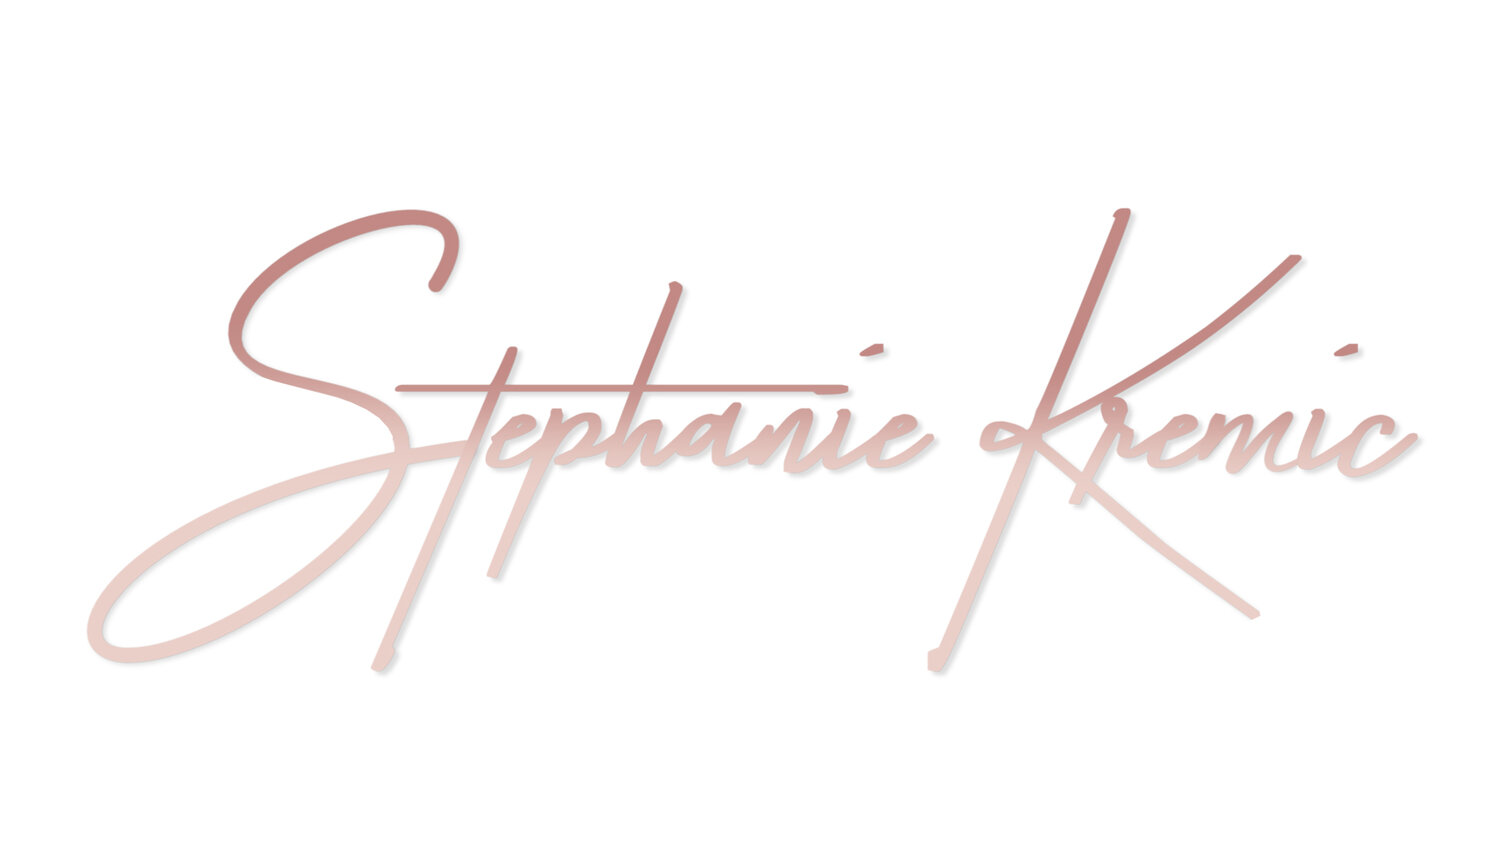 Stephanie Kremic